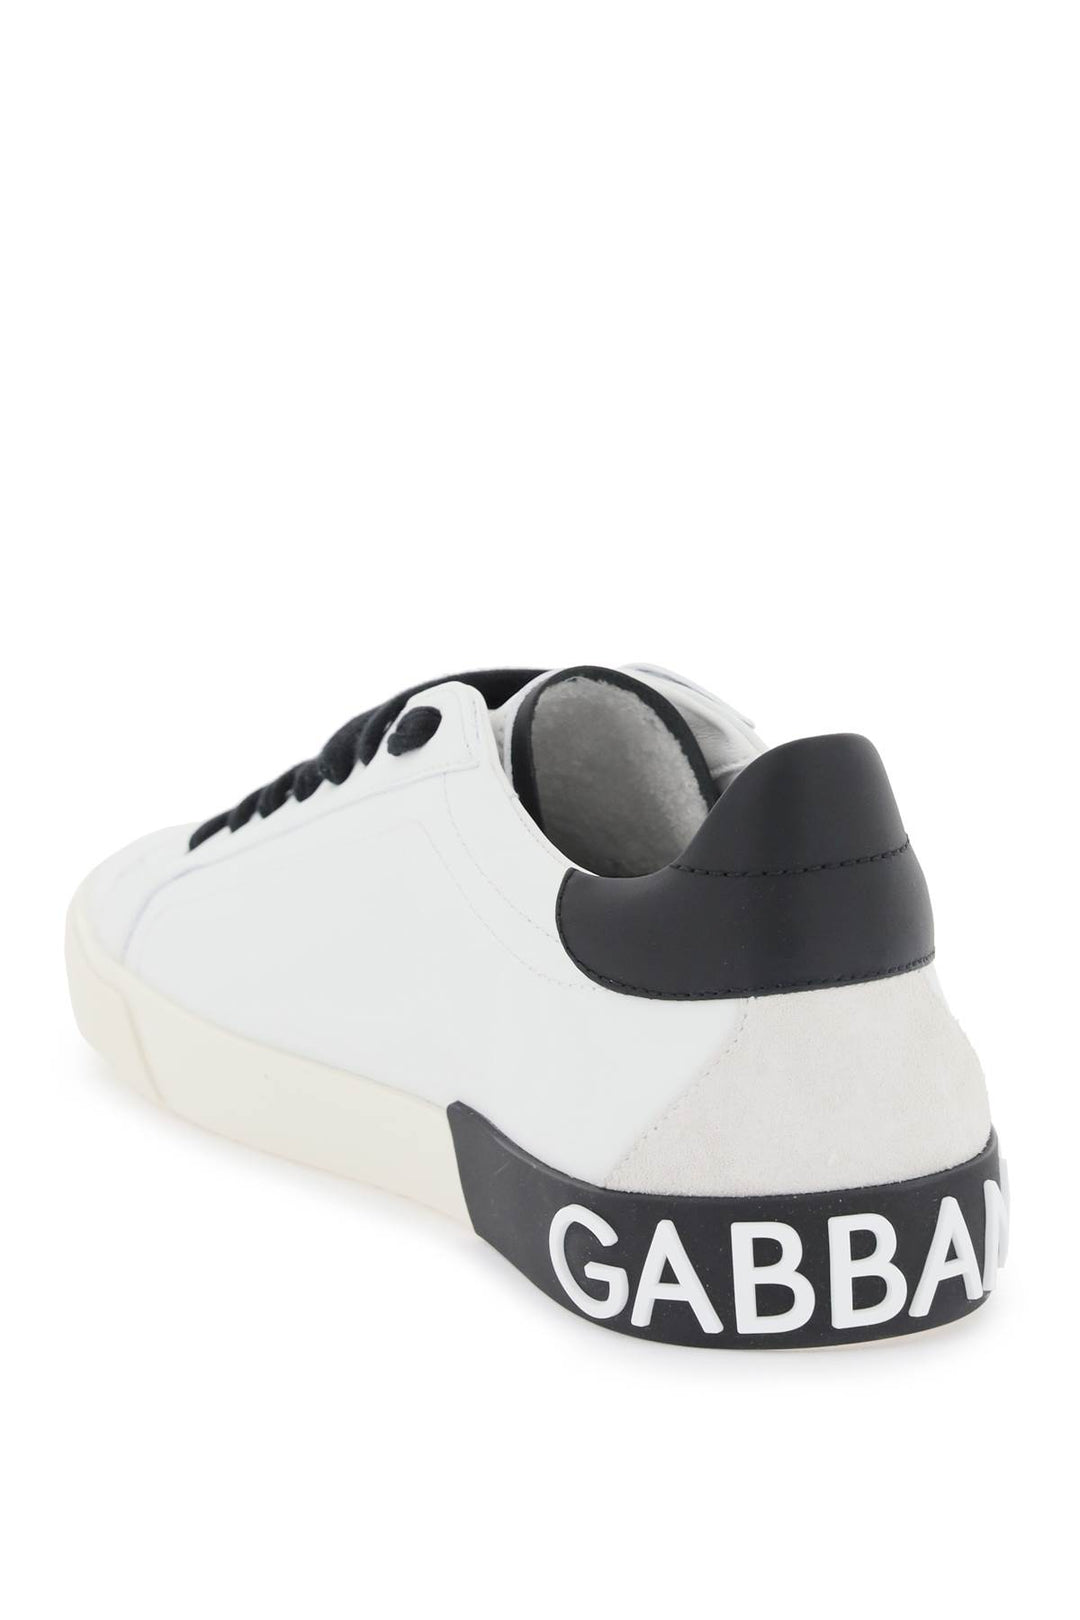 Dolce & Gabbana Nappa Leather Portofino Sneakers   White